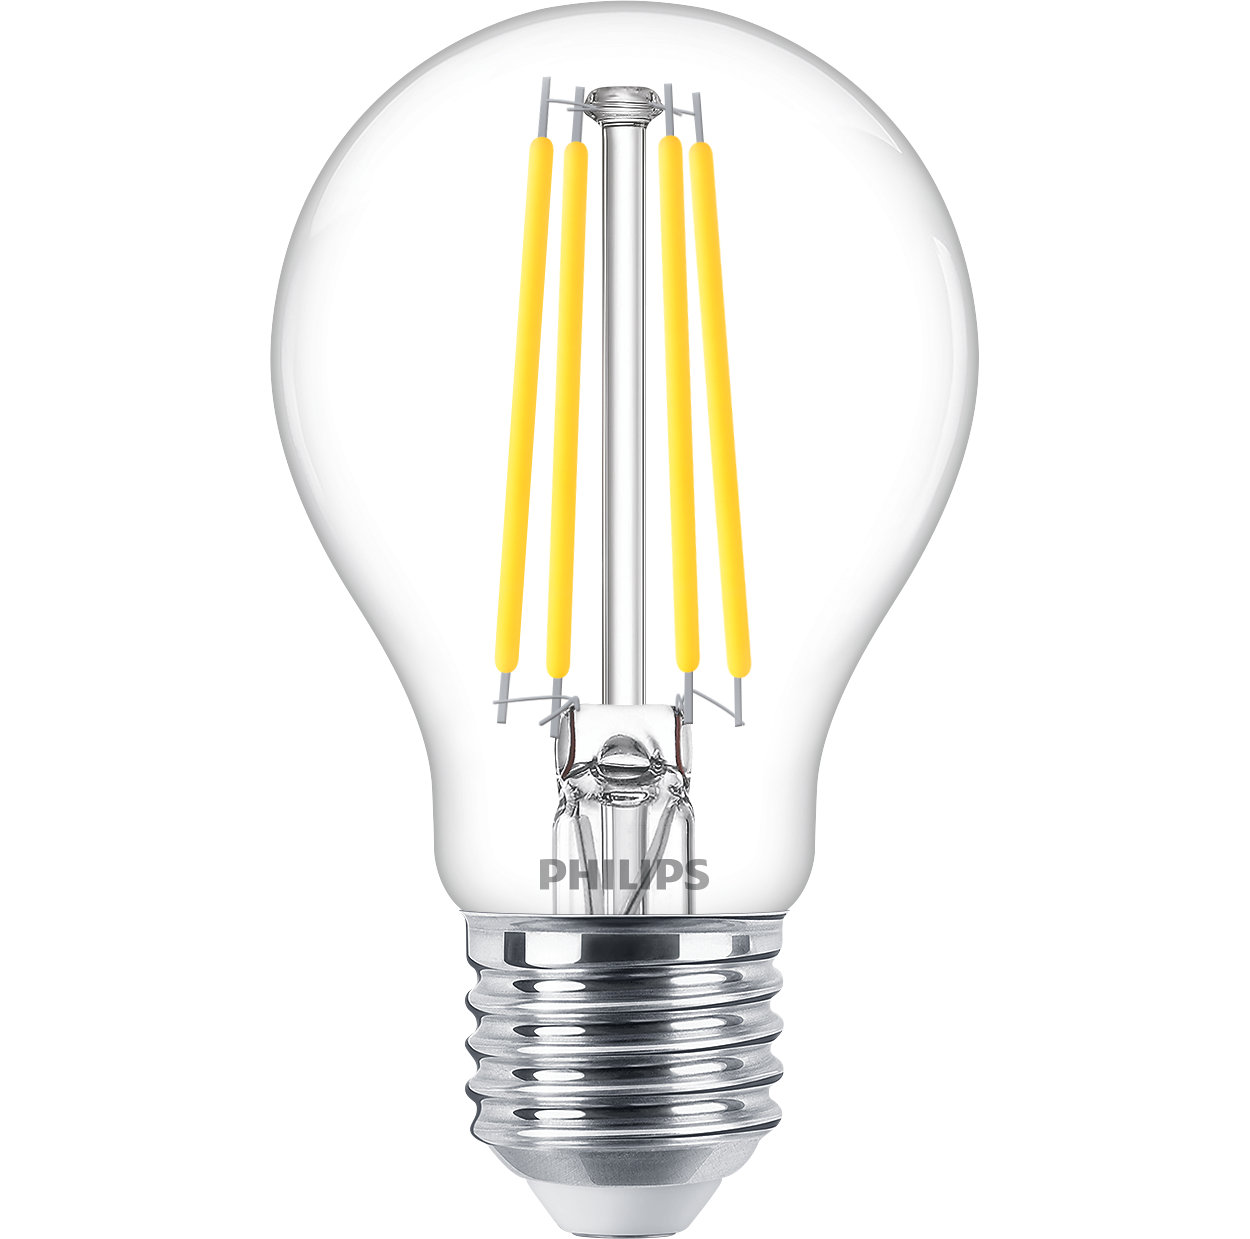 Daha az enerji tüketimi sağlayan dim edilebilir cam LED ampuller